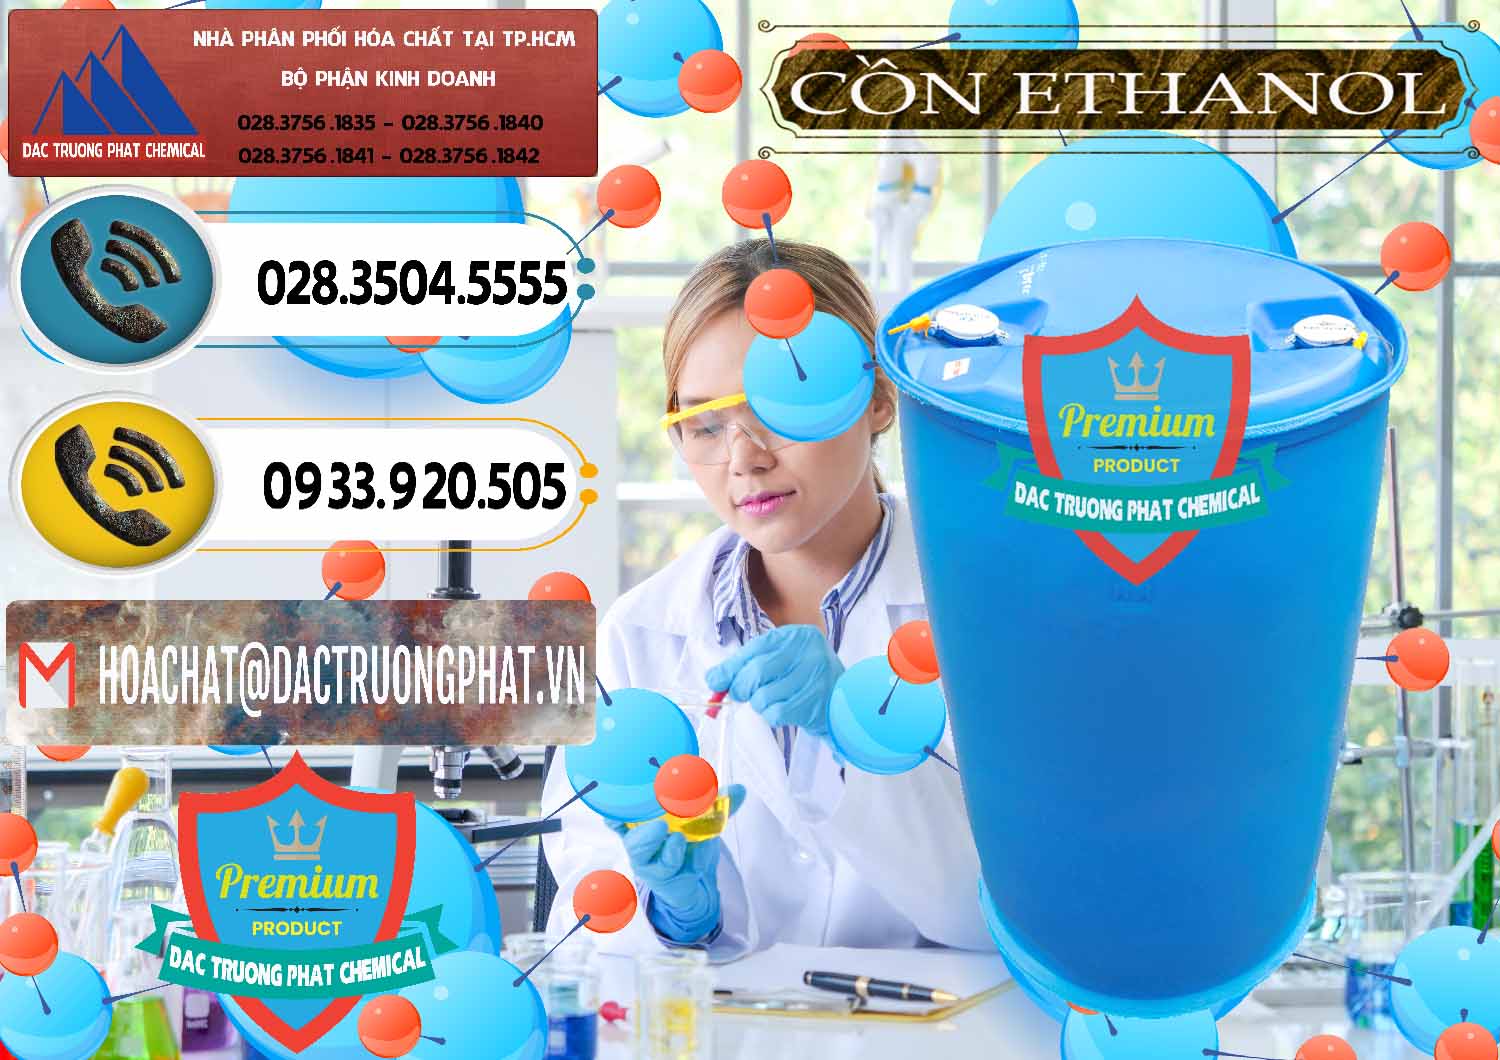 Đơn vị chuyên bán và phân phối Cồn Ethanol - C2H5OH Thực Phẩm Food Grade Việt Nam - 0330 - Cty chuyên cung cấp & bán hóa chất tại TP.HCM - hoachatdetnhuom.vn